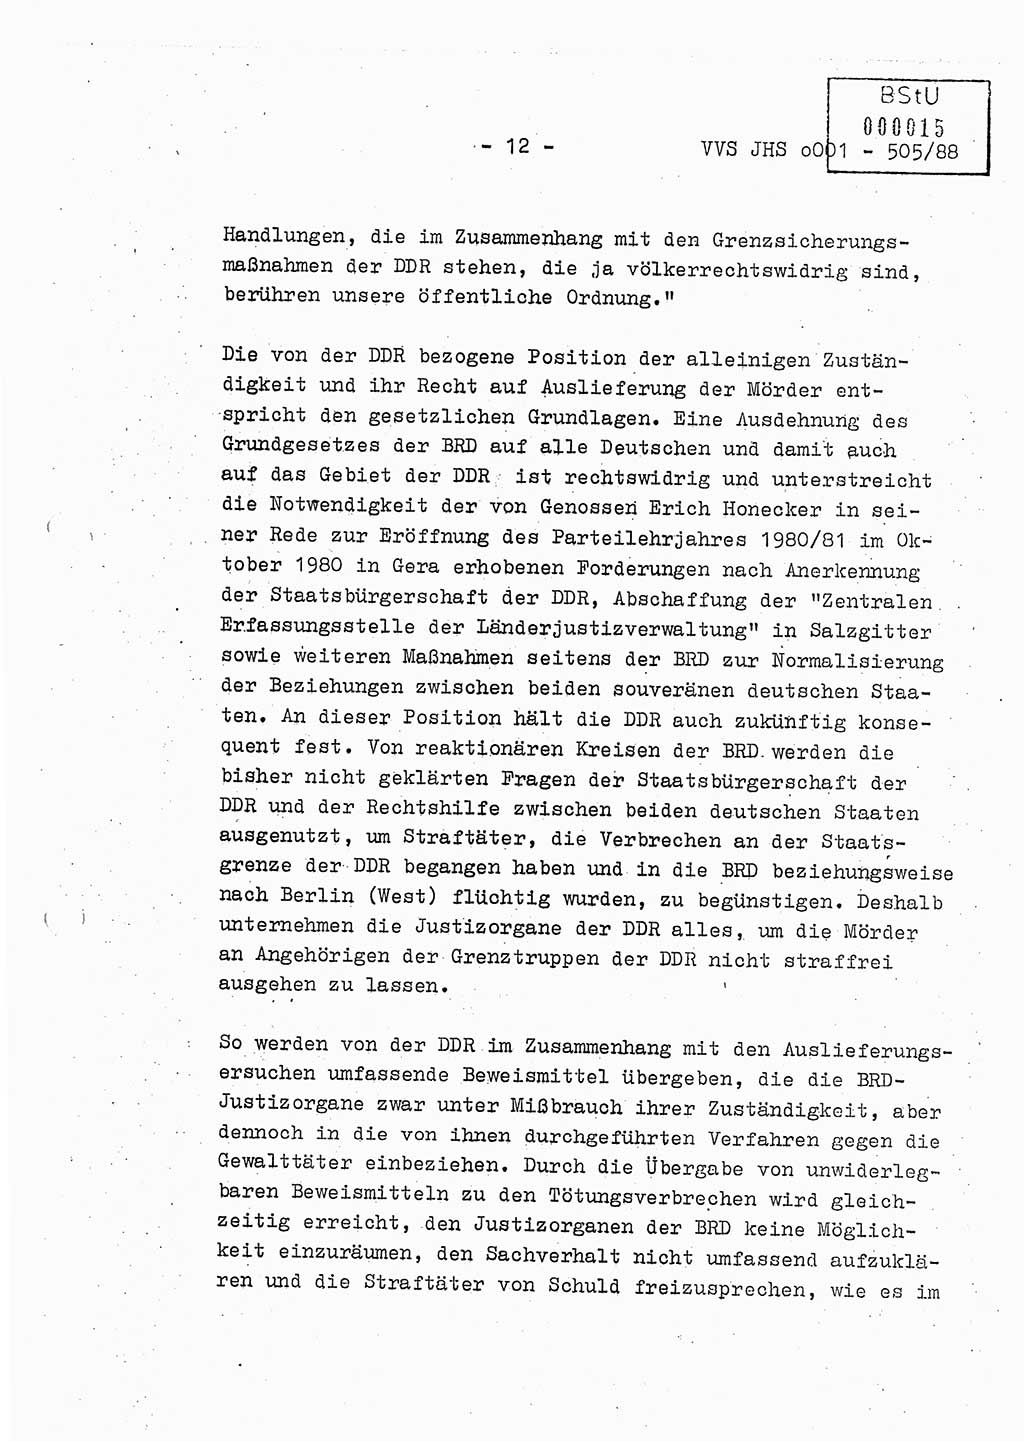 Diplomarbeit Leutnant Frank Schulze (HA Ⅸ/9), Ministerium für Staatssicherheit (MfS) [Deutsche Demokratische Republik (DDR)], Juristische Hochschule (JHS), Vertrauliche Verschlußsache (VVS) o001-505/88, Potsdam 1988, Seite 12 (Dipl.-Arb. MfS DDR JHS VVS o001-505/88 1988, S. 12)